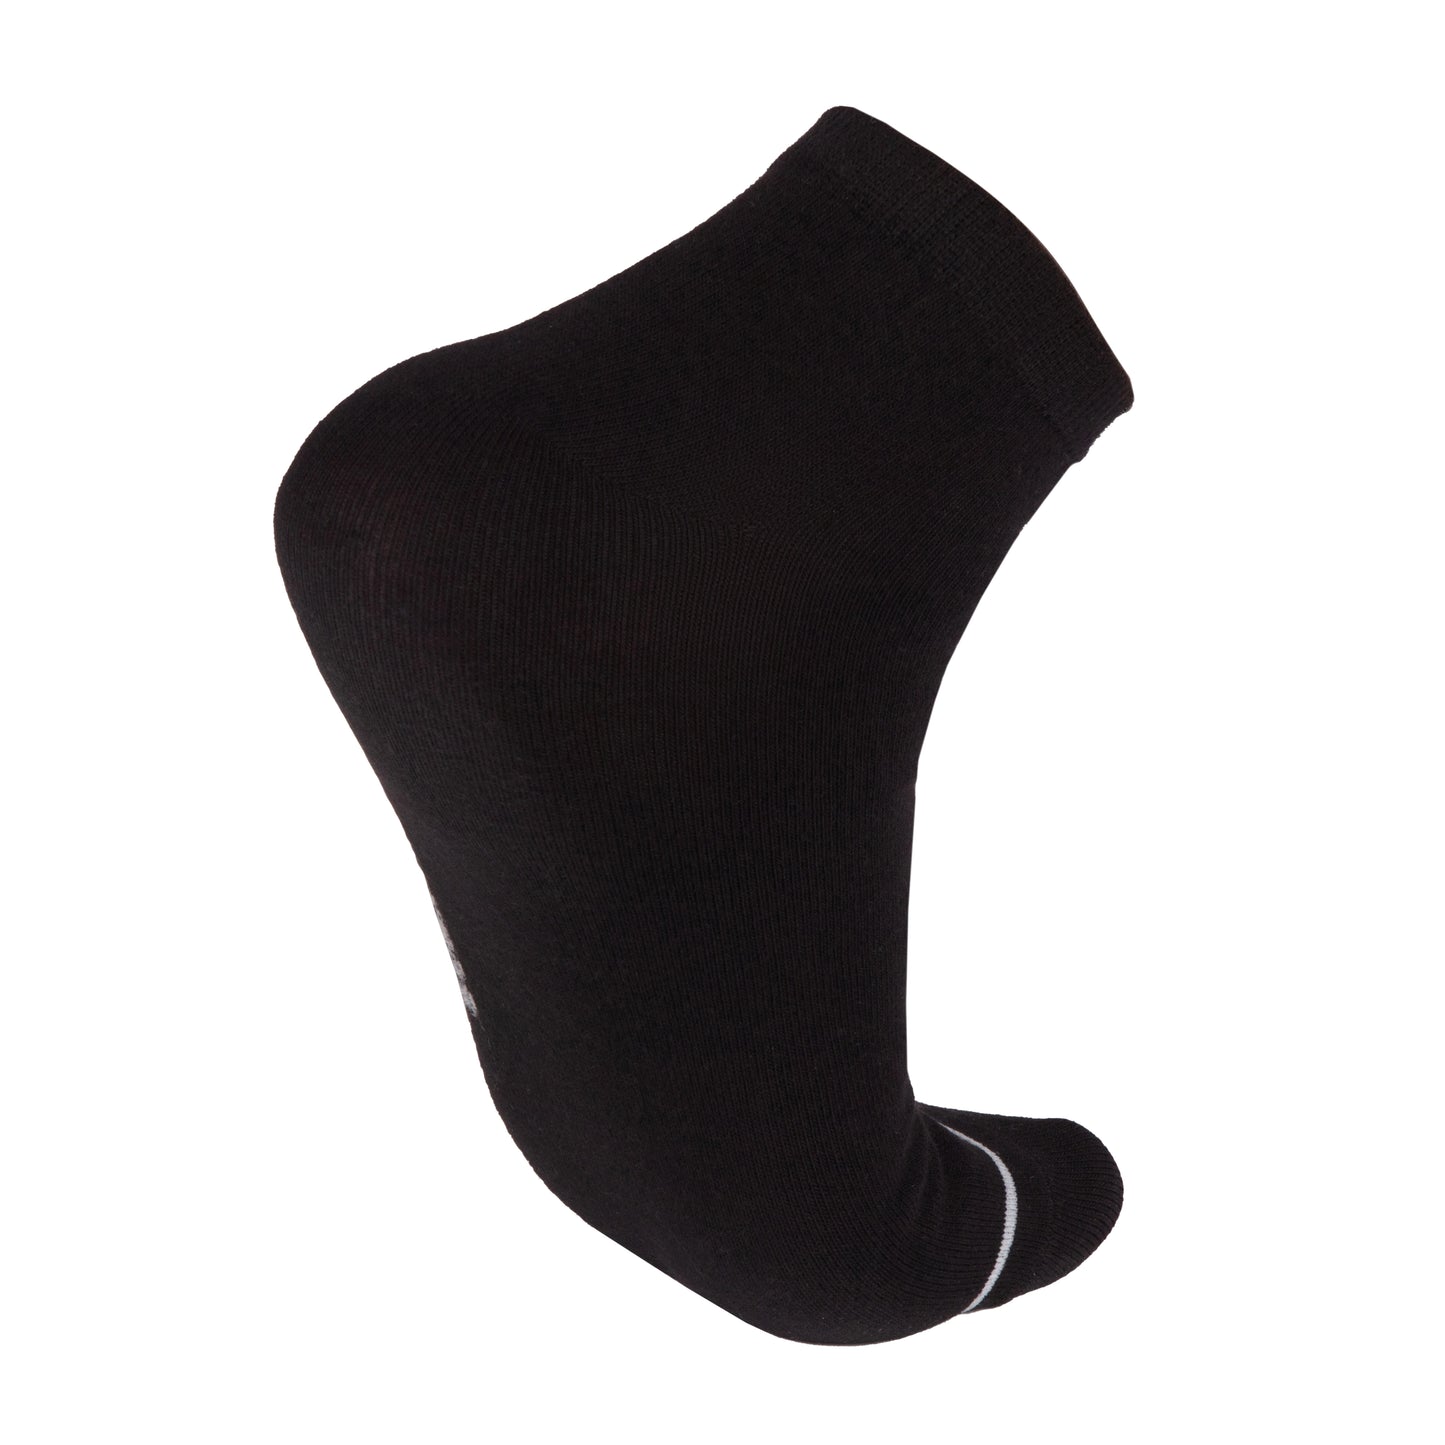 Chaussettes noires unisexes, mode, coupe basse - pack de 3 ou 6 paires